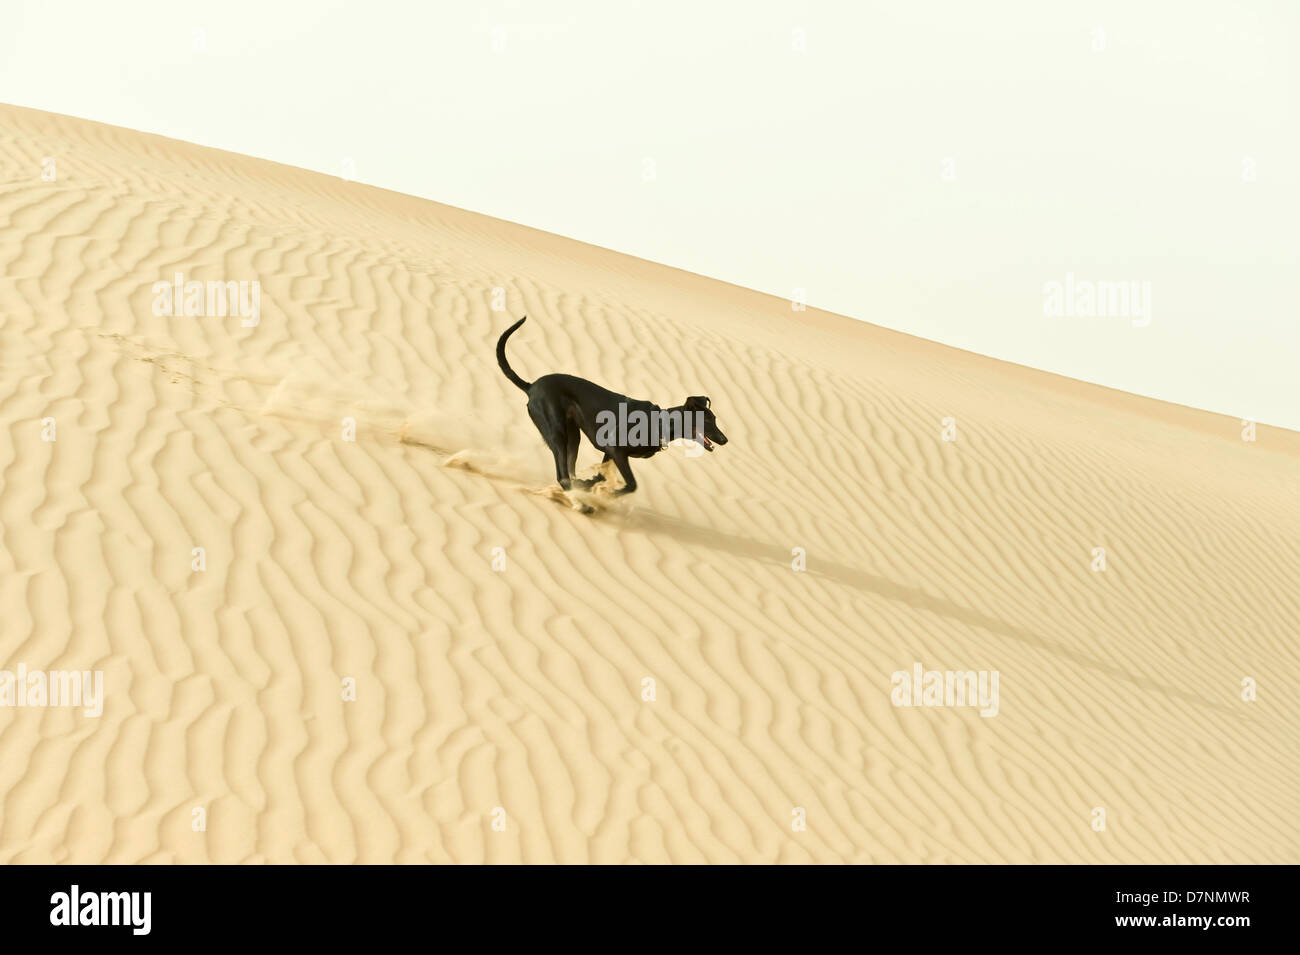 Eine typische "Wüste Hund", ein schwarzer Saluki cross läuft auf Sanddünen in der Wüste, Abu Dhabi Stockfoto